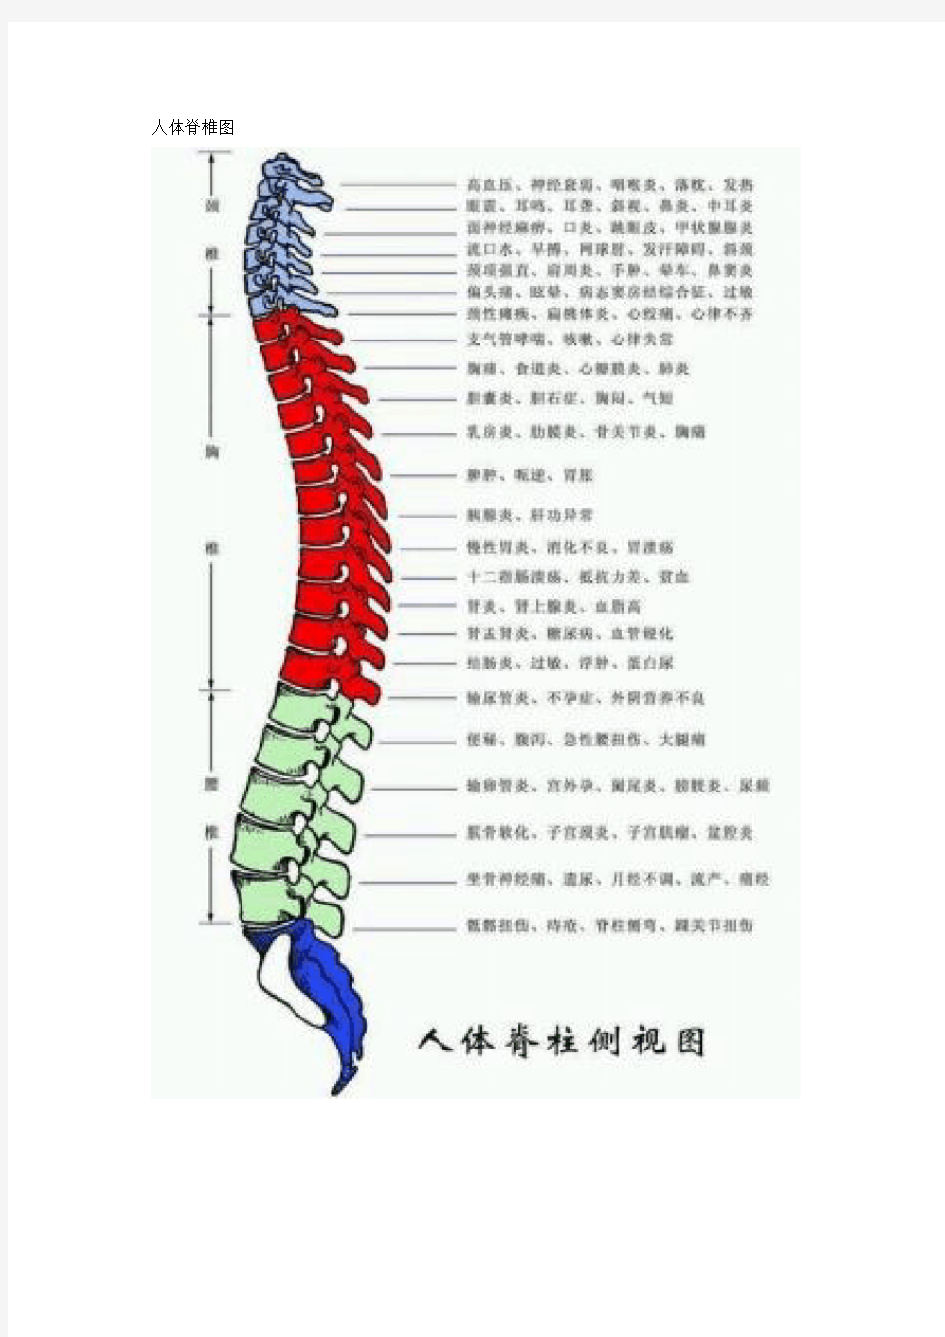 人体脊椎图